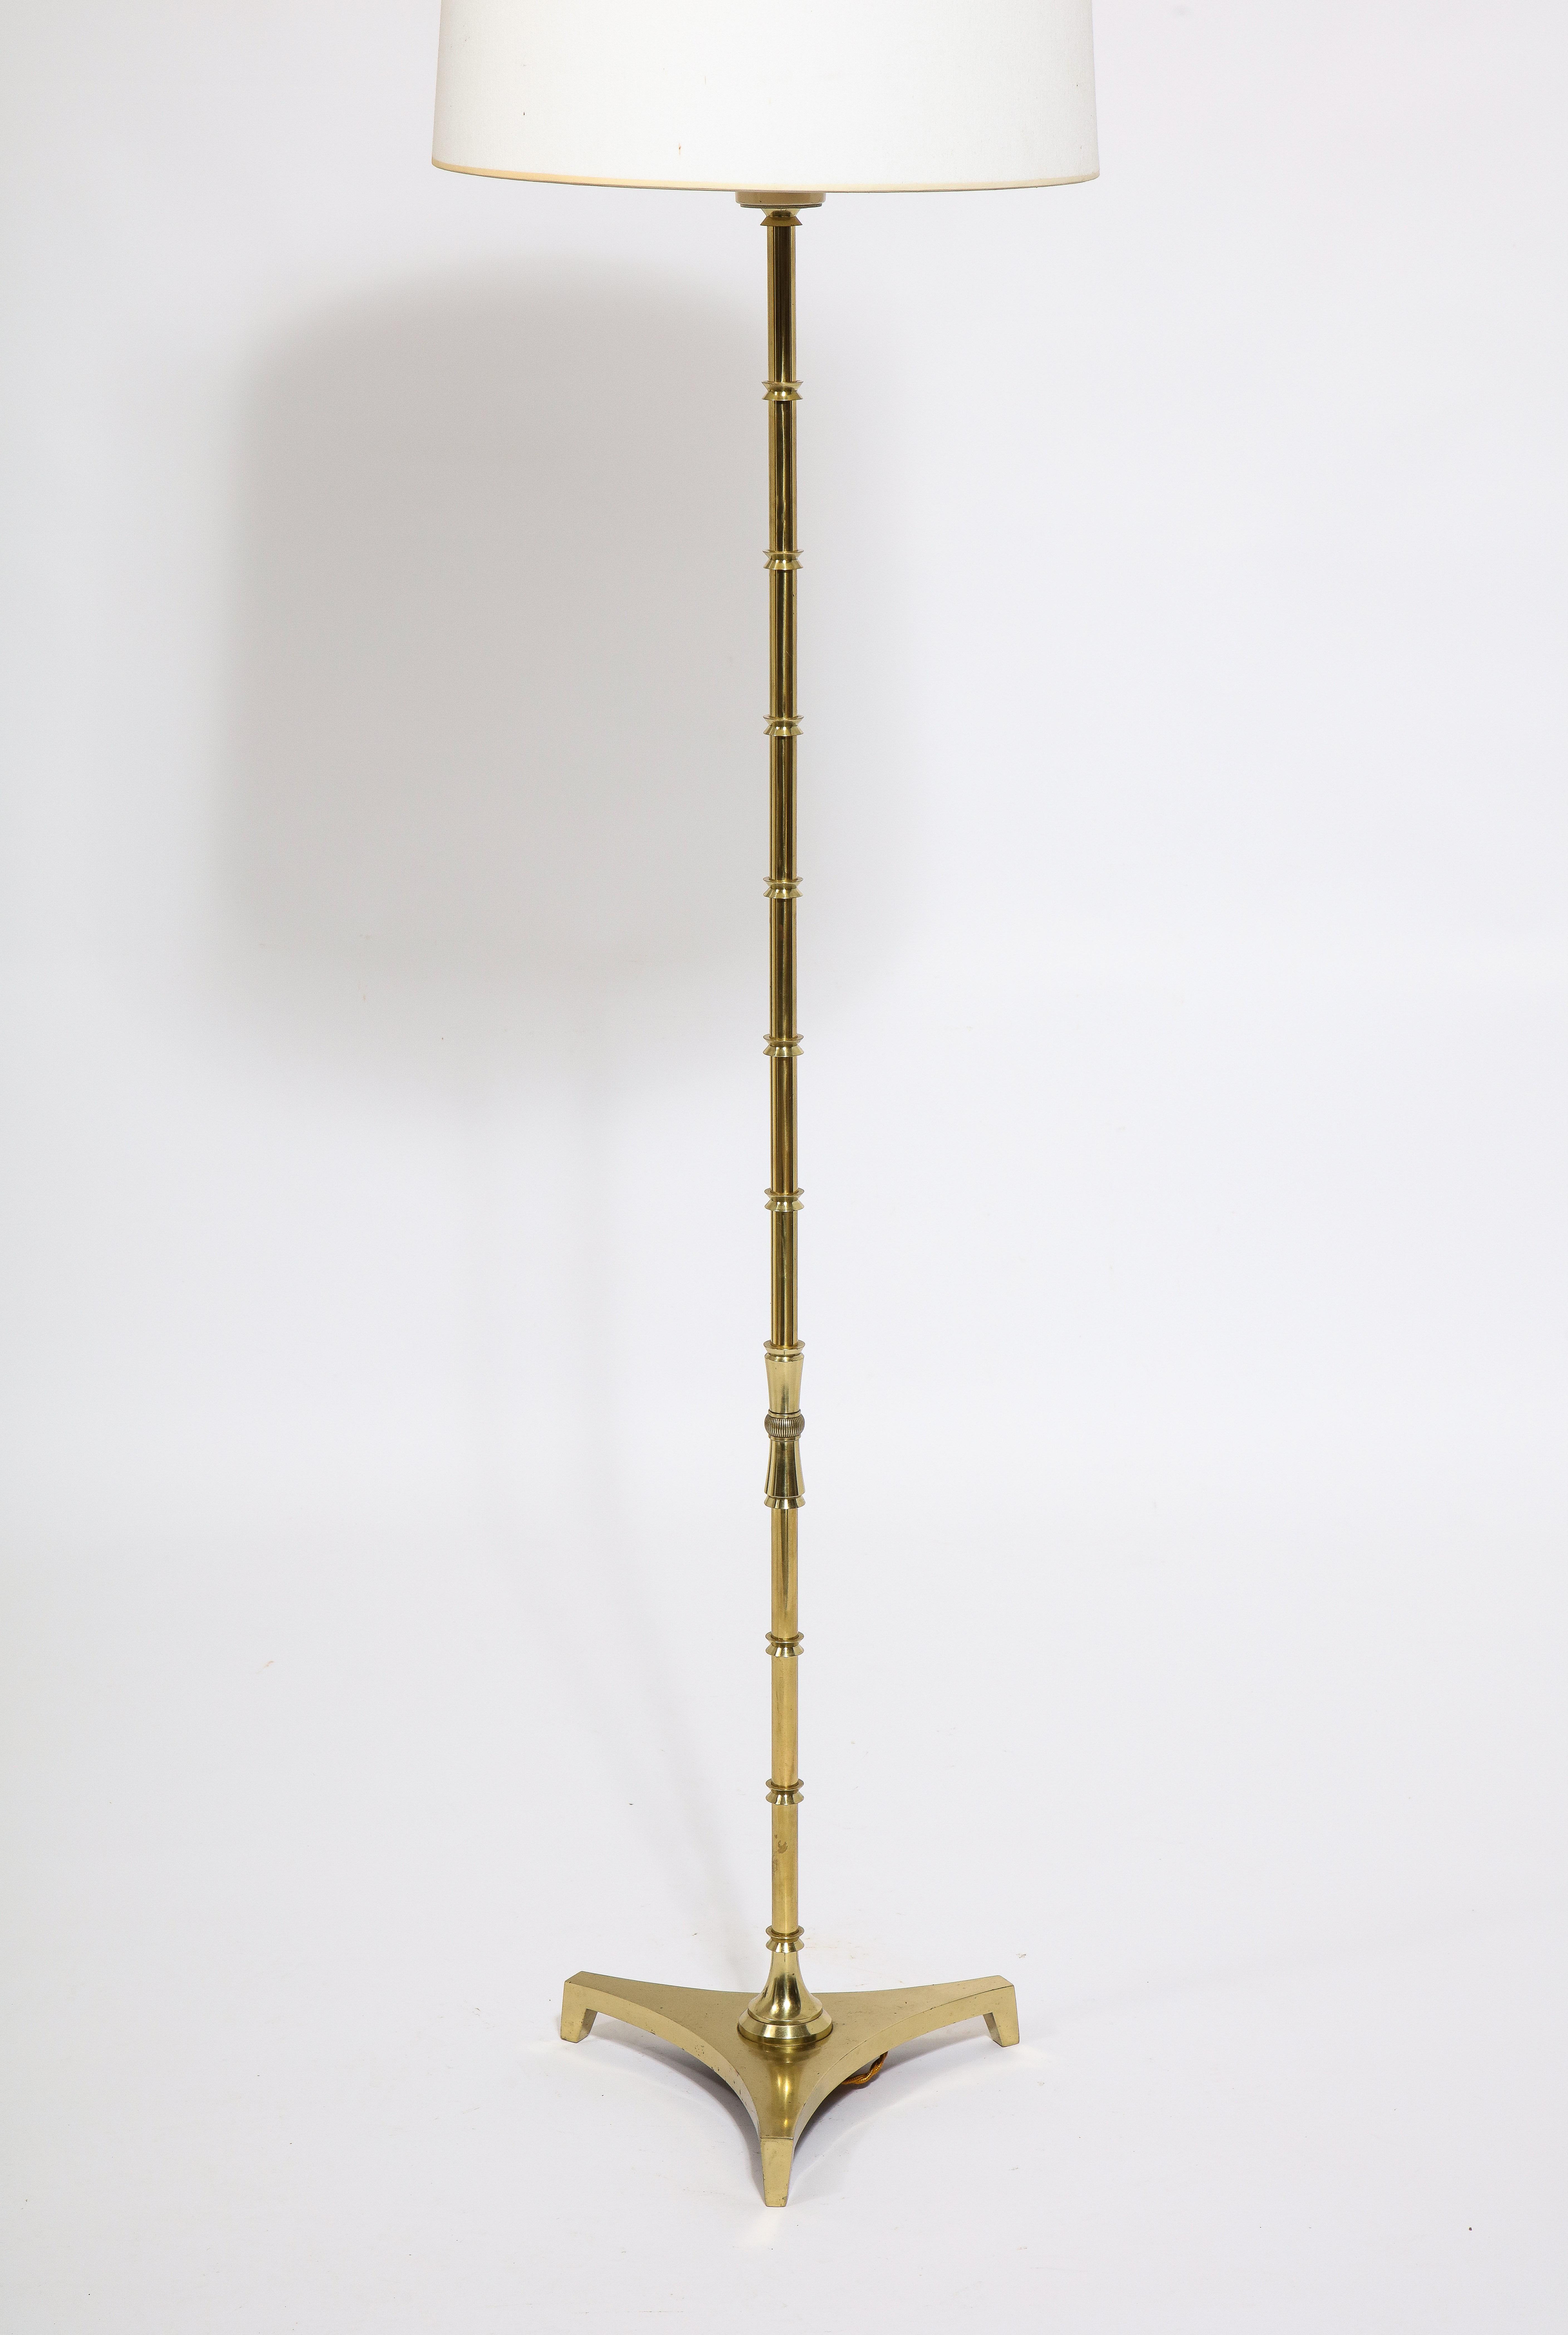 Jansen Brass Floor Lamp, France 1970's  For Sale 2